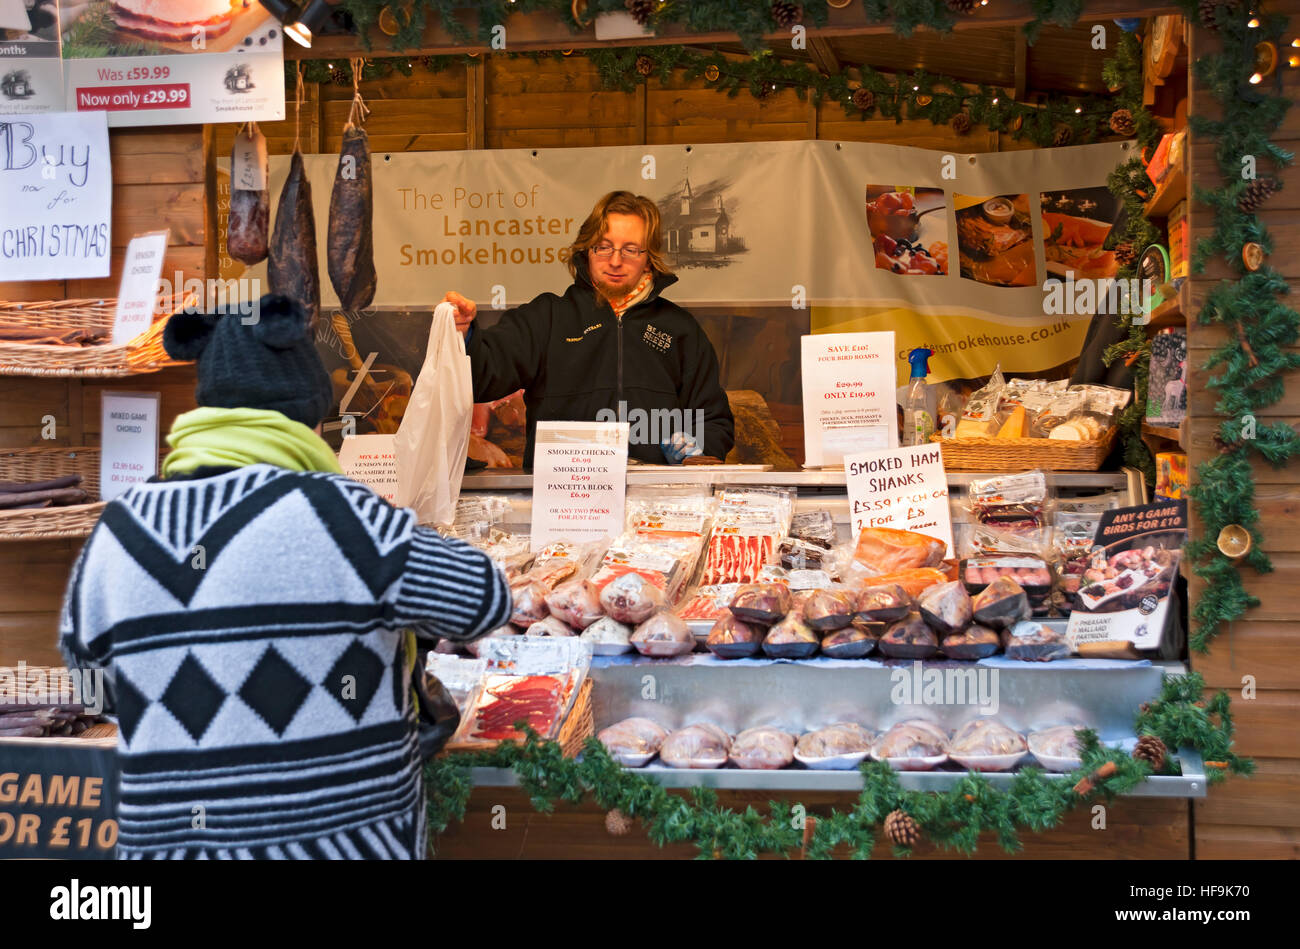 Shopper kaufen Fleisch am Weihnachtsmarkt Händler Stand in St. Nicholas Fayre im Winter York North Yorkshire England Vereinigtes Königreich Großbritannien GB Großbritannien Stockfoto